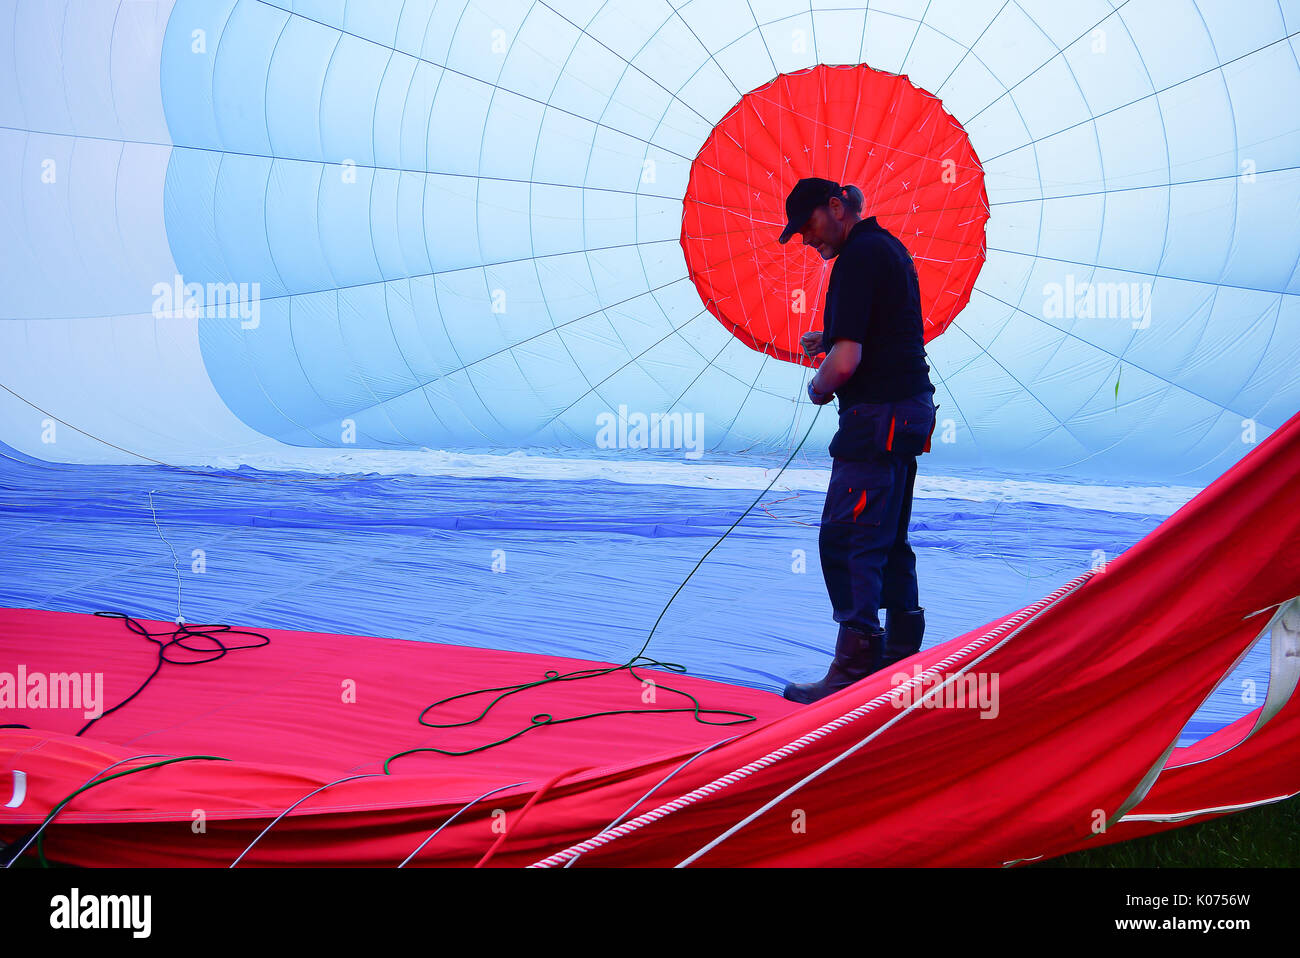 Die ballonfahrer Spaziergänge in einem Heißluftballon und steuert die Seile, Stockfoto